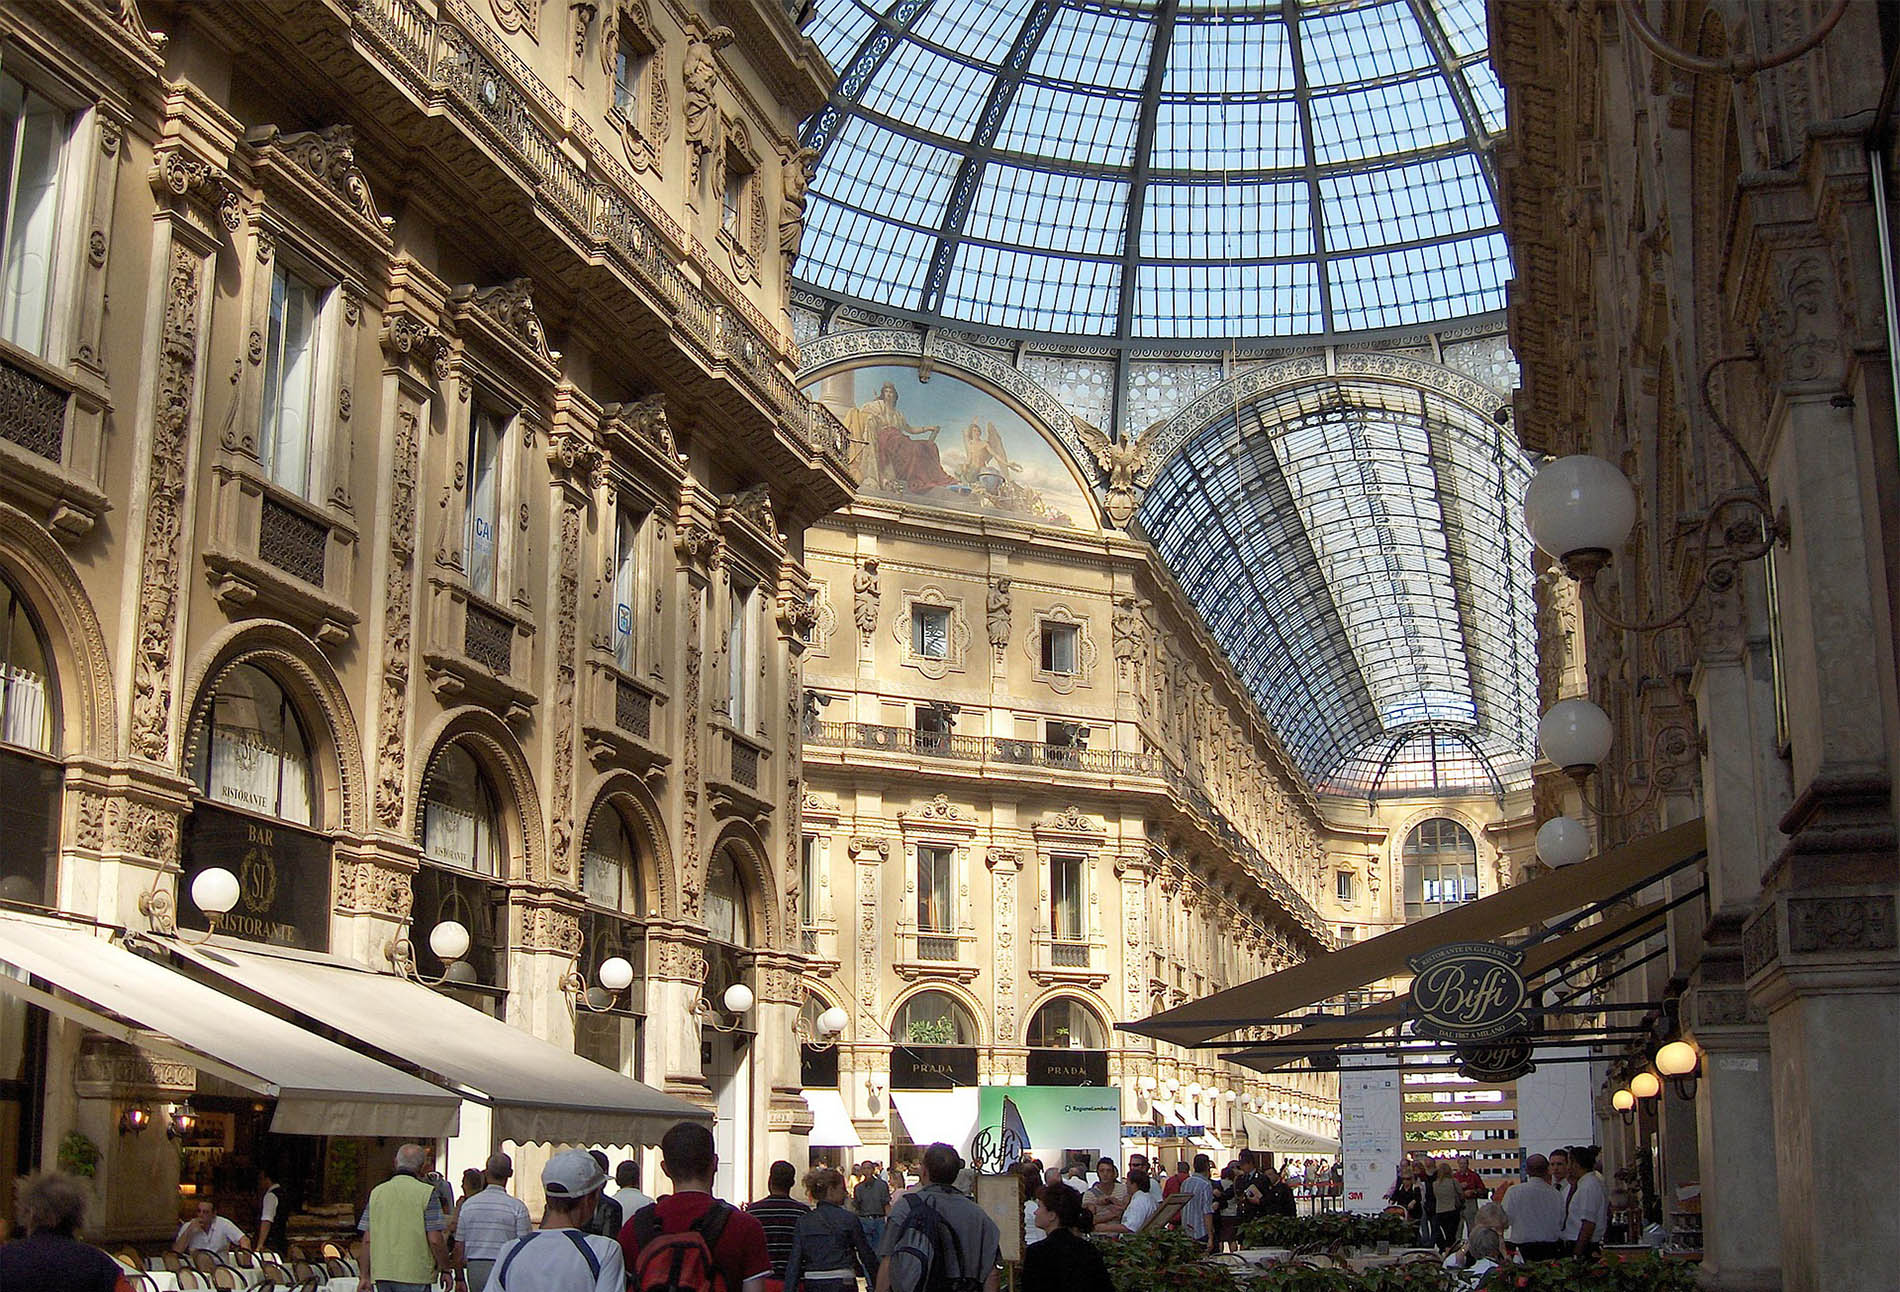 Milan, les lieux incontournables de votre voyage en Italie